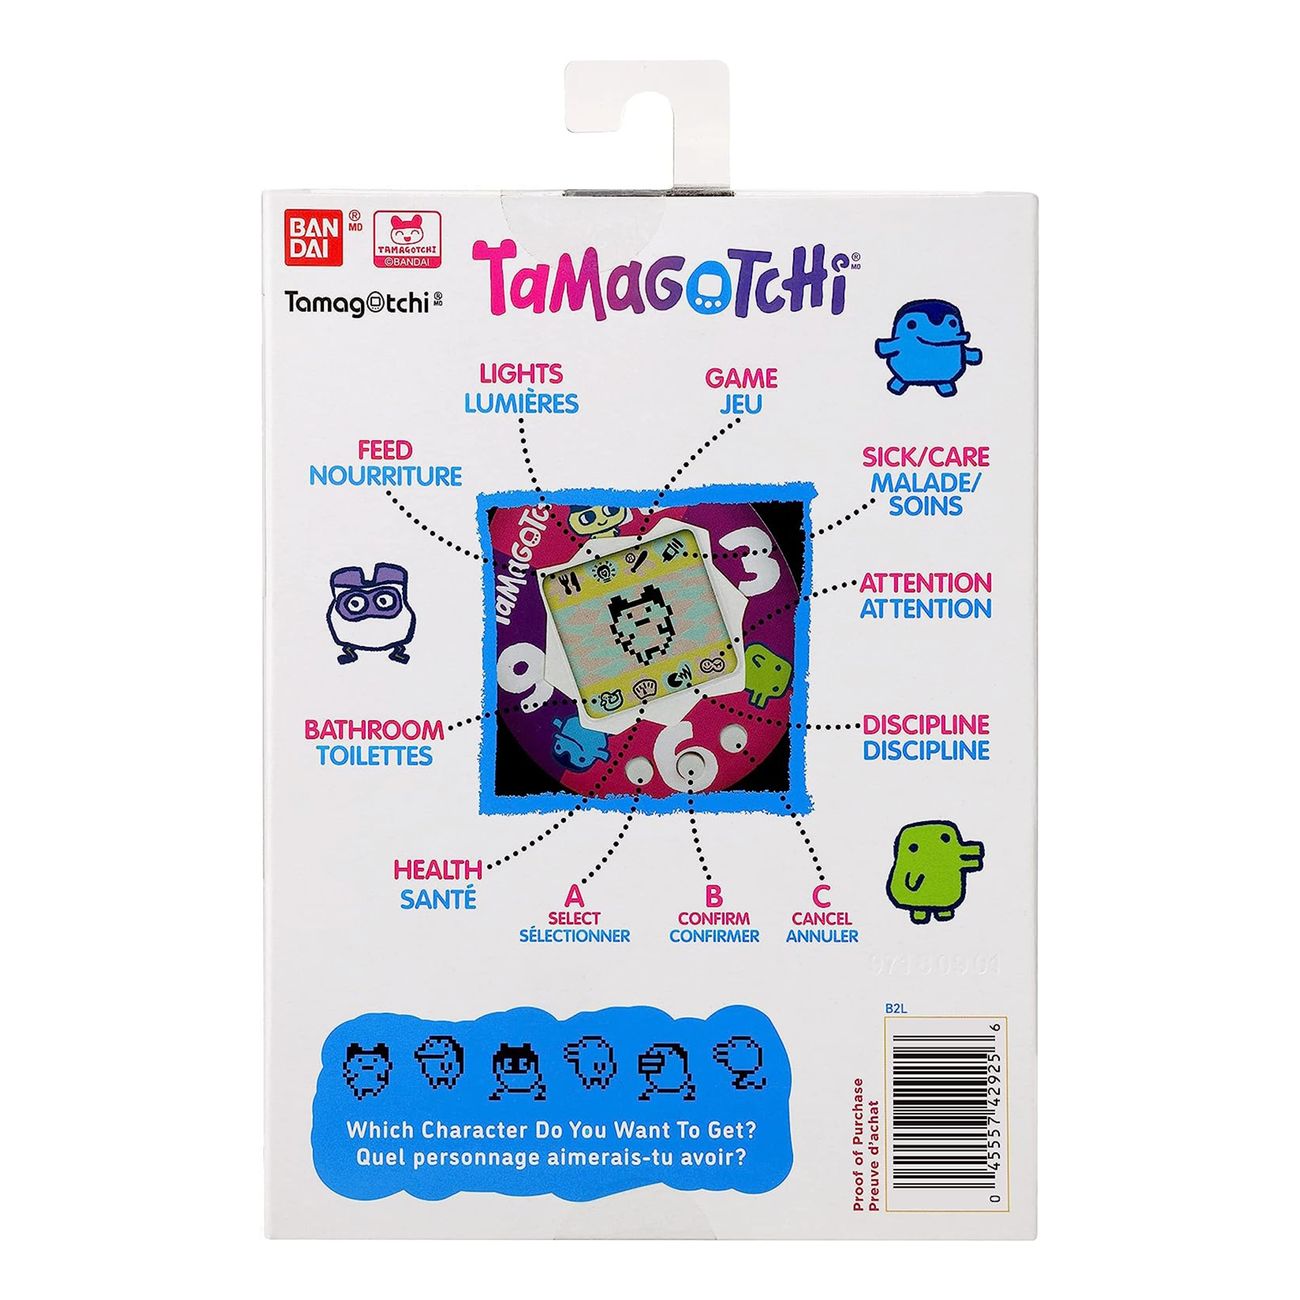 tamagotchi-original-mametchi-comic-book-98680-4